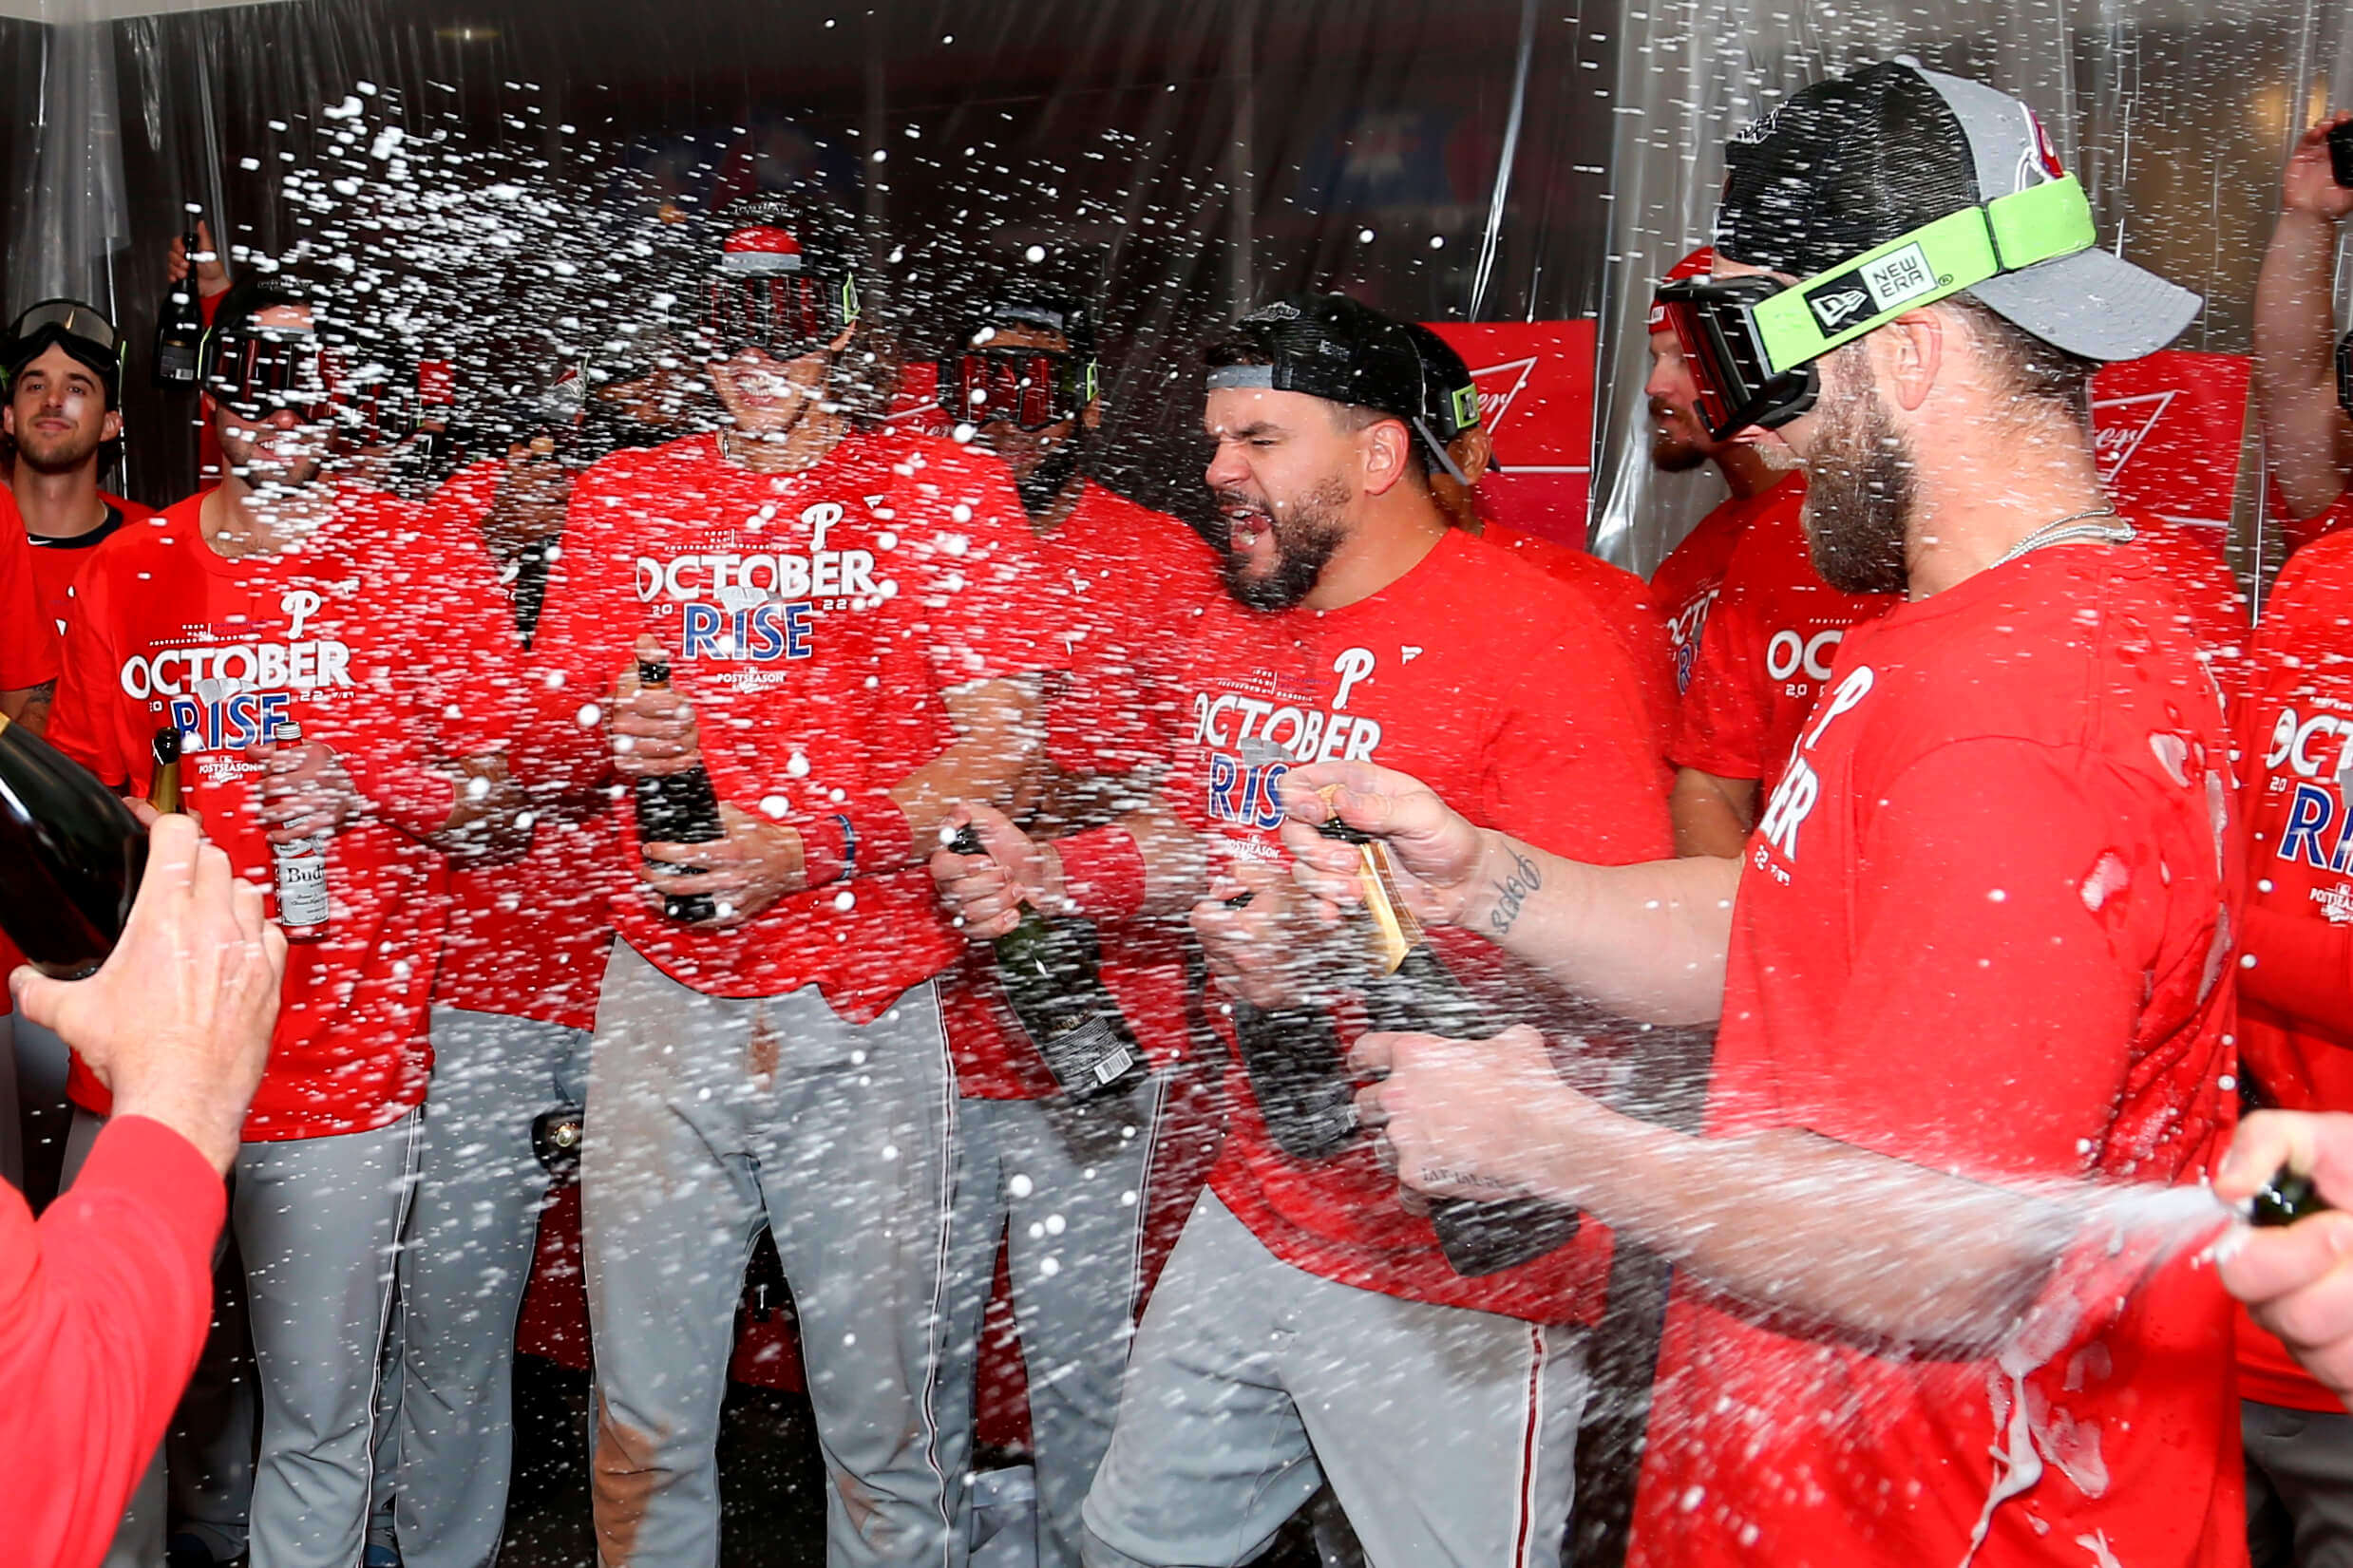 Philadelphia Phillies Braves NL East champs congrats CBP